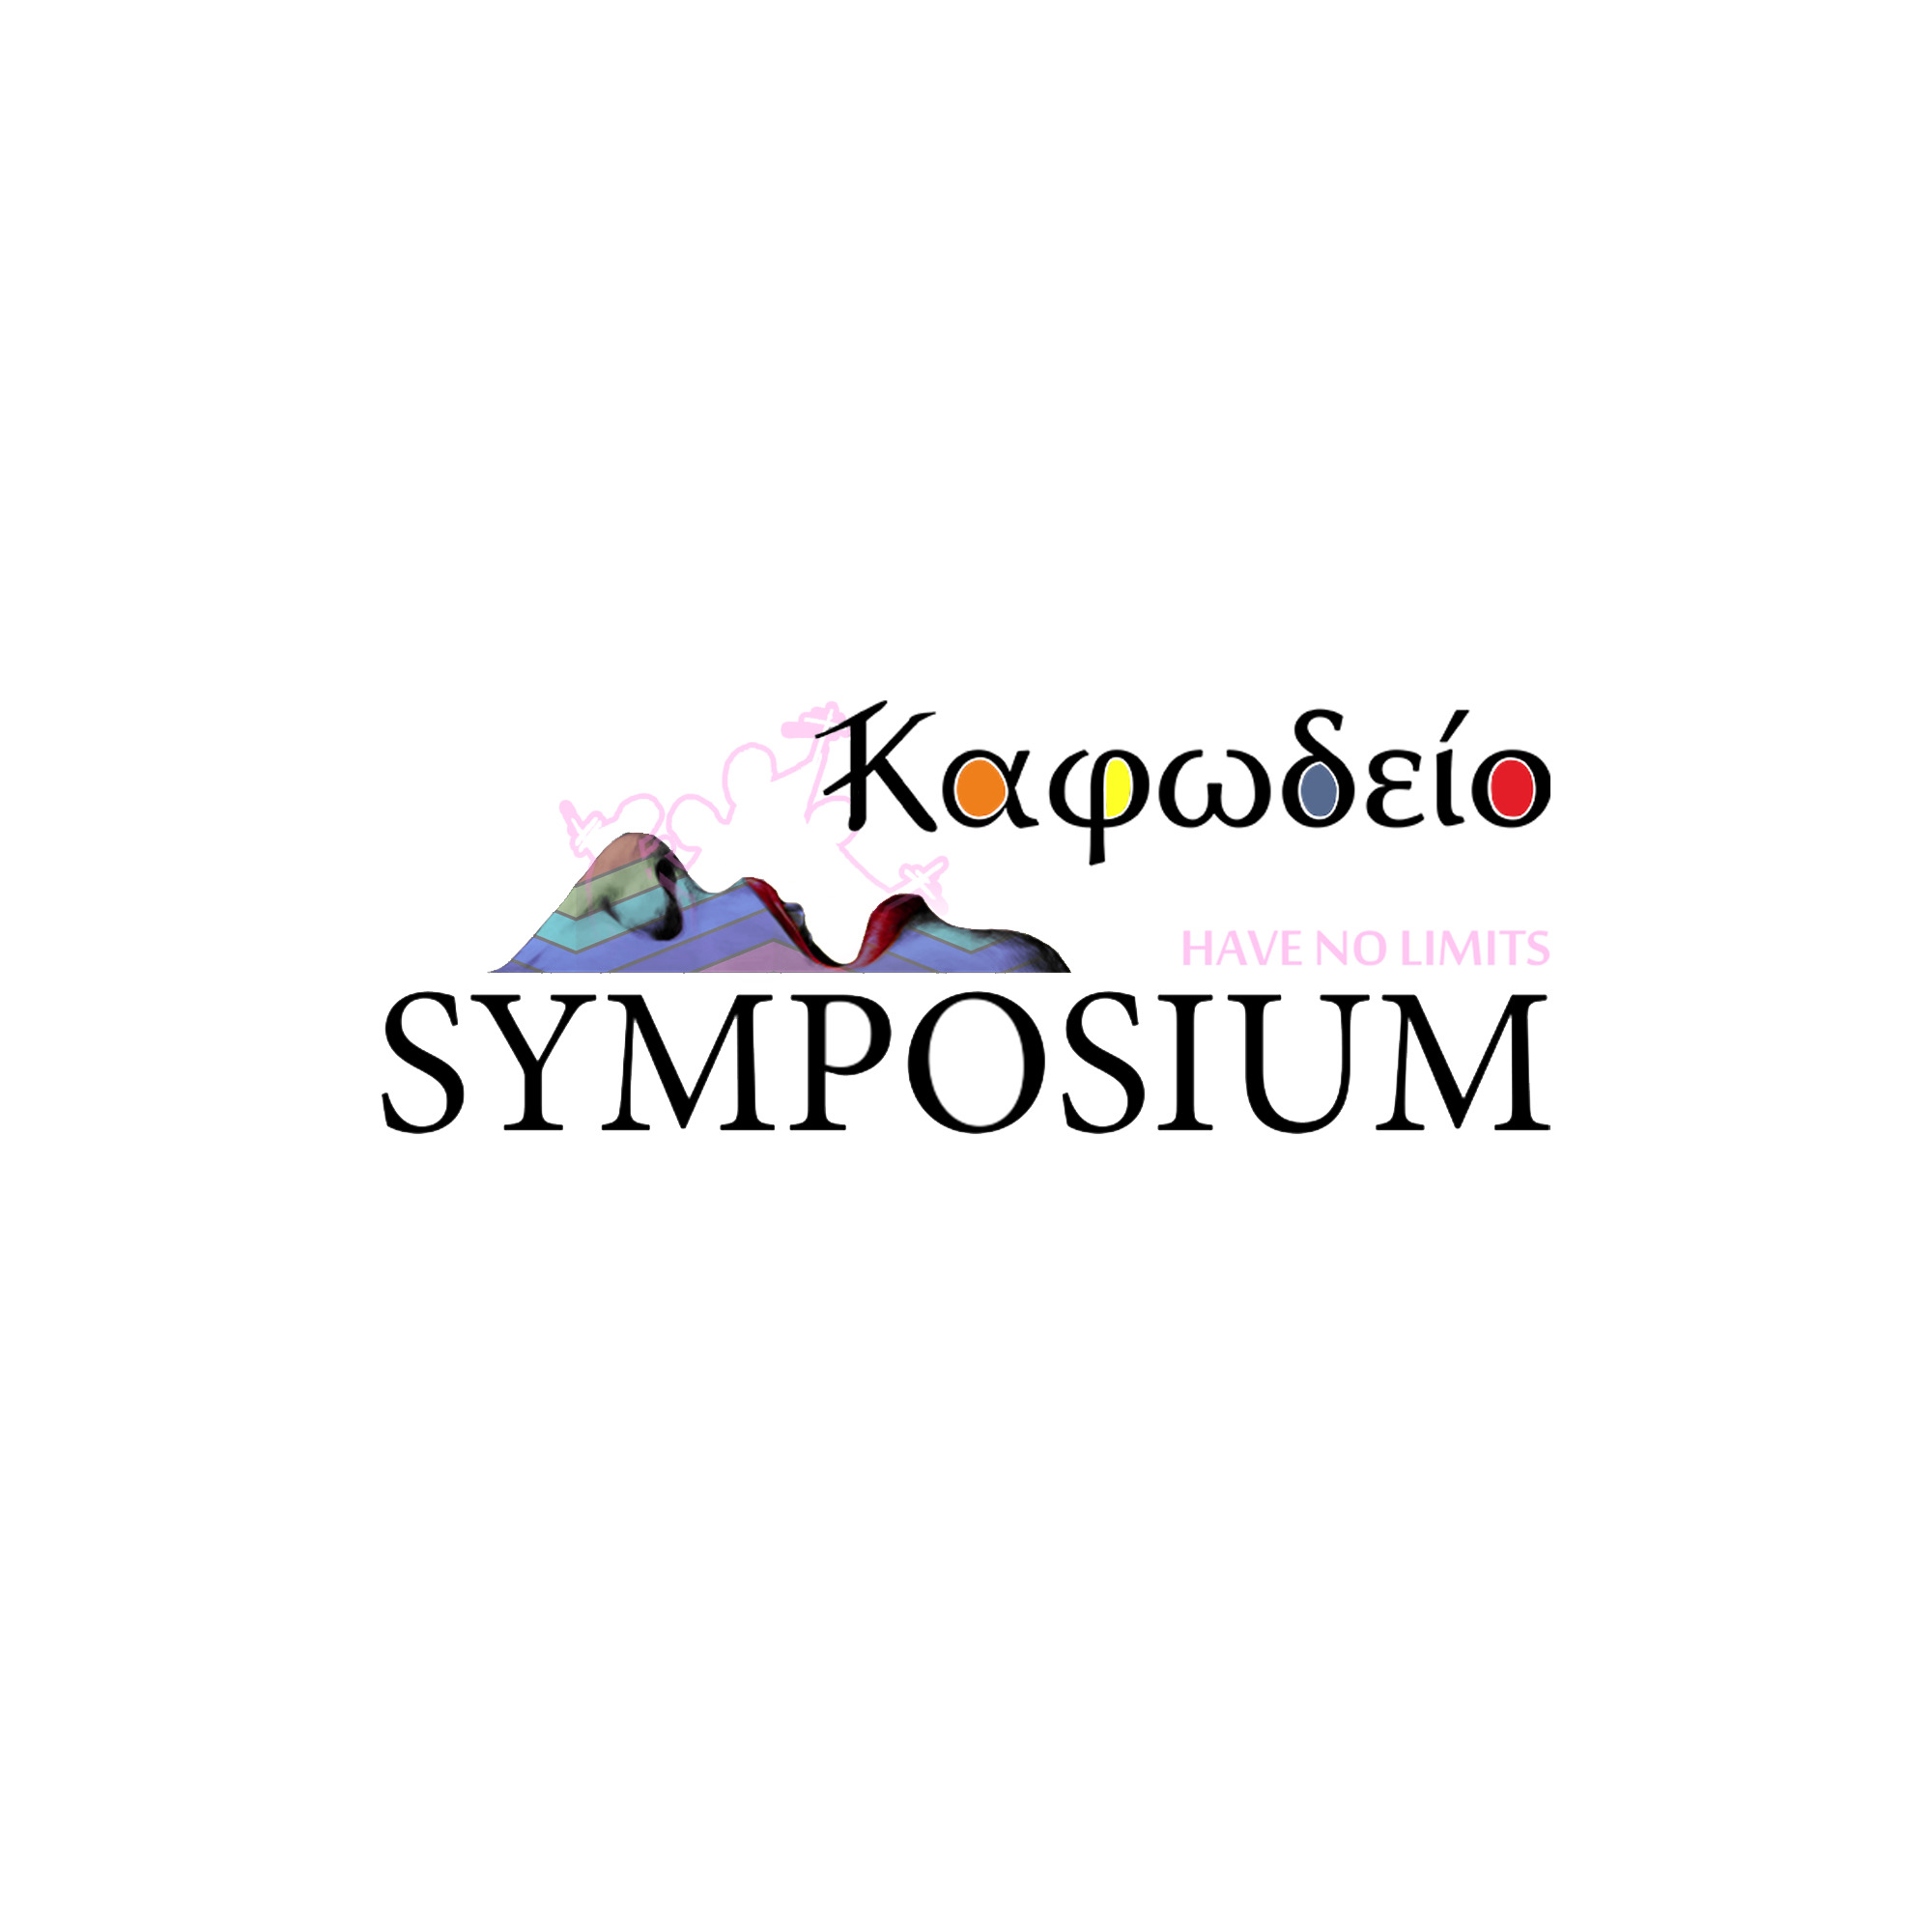 Kafodeio x symposium Logo